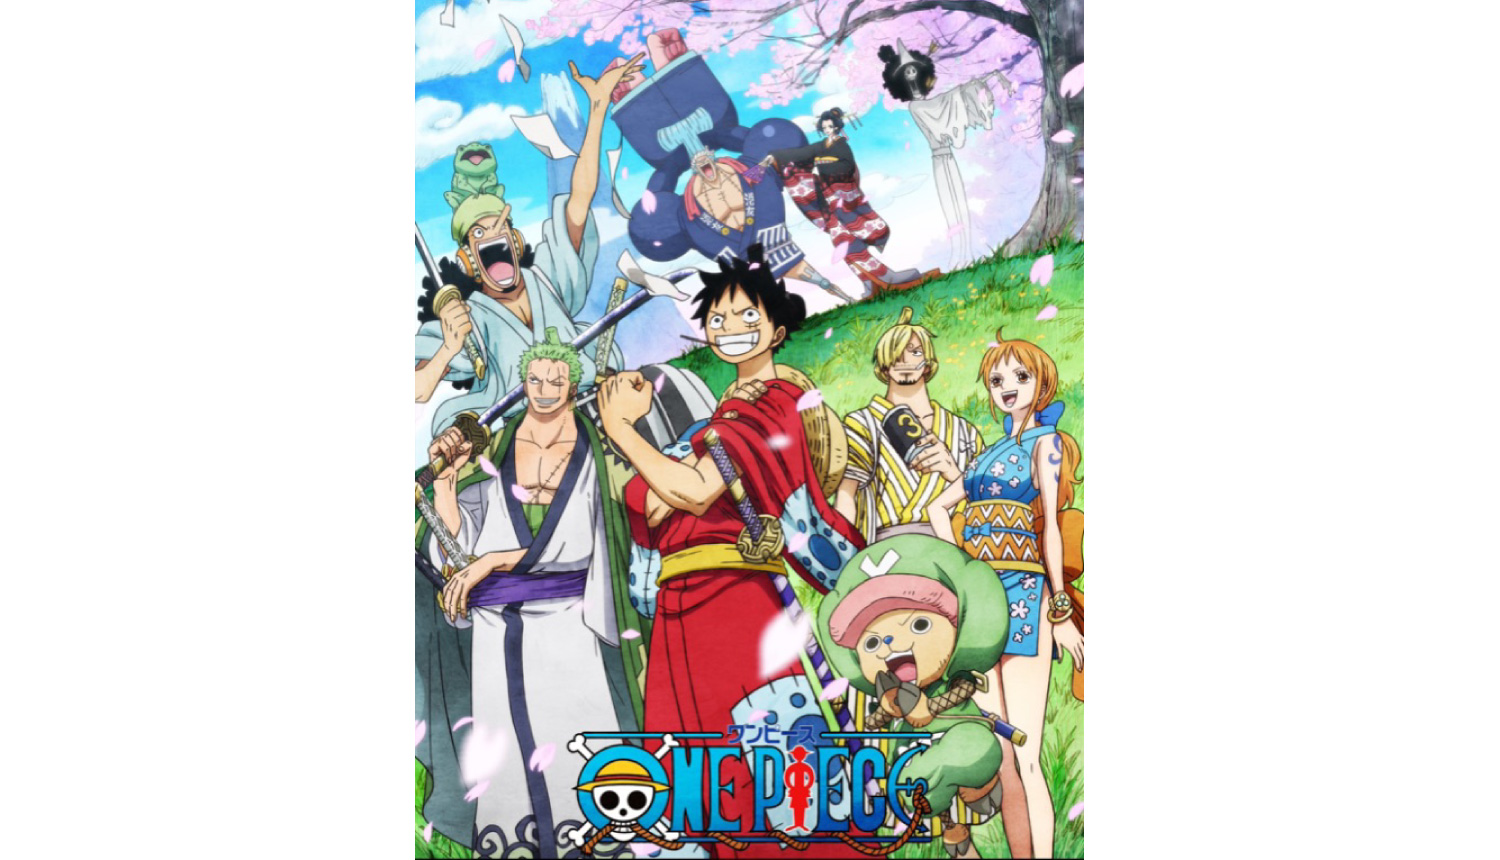 Da Ice６か月連続リリース第一弾は Tvアニメ One Piece 主題歌に決定 Moshi Moshi Nippon もしもしにっぽん